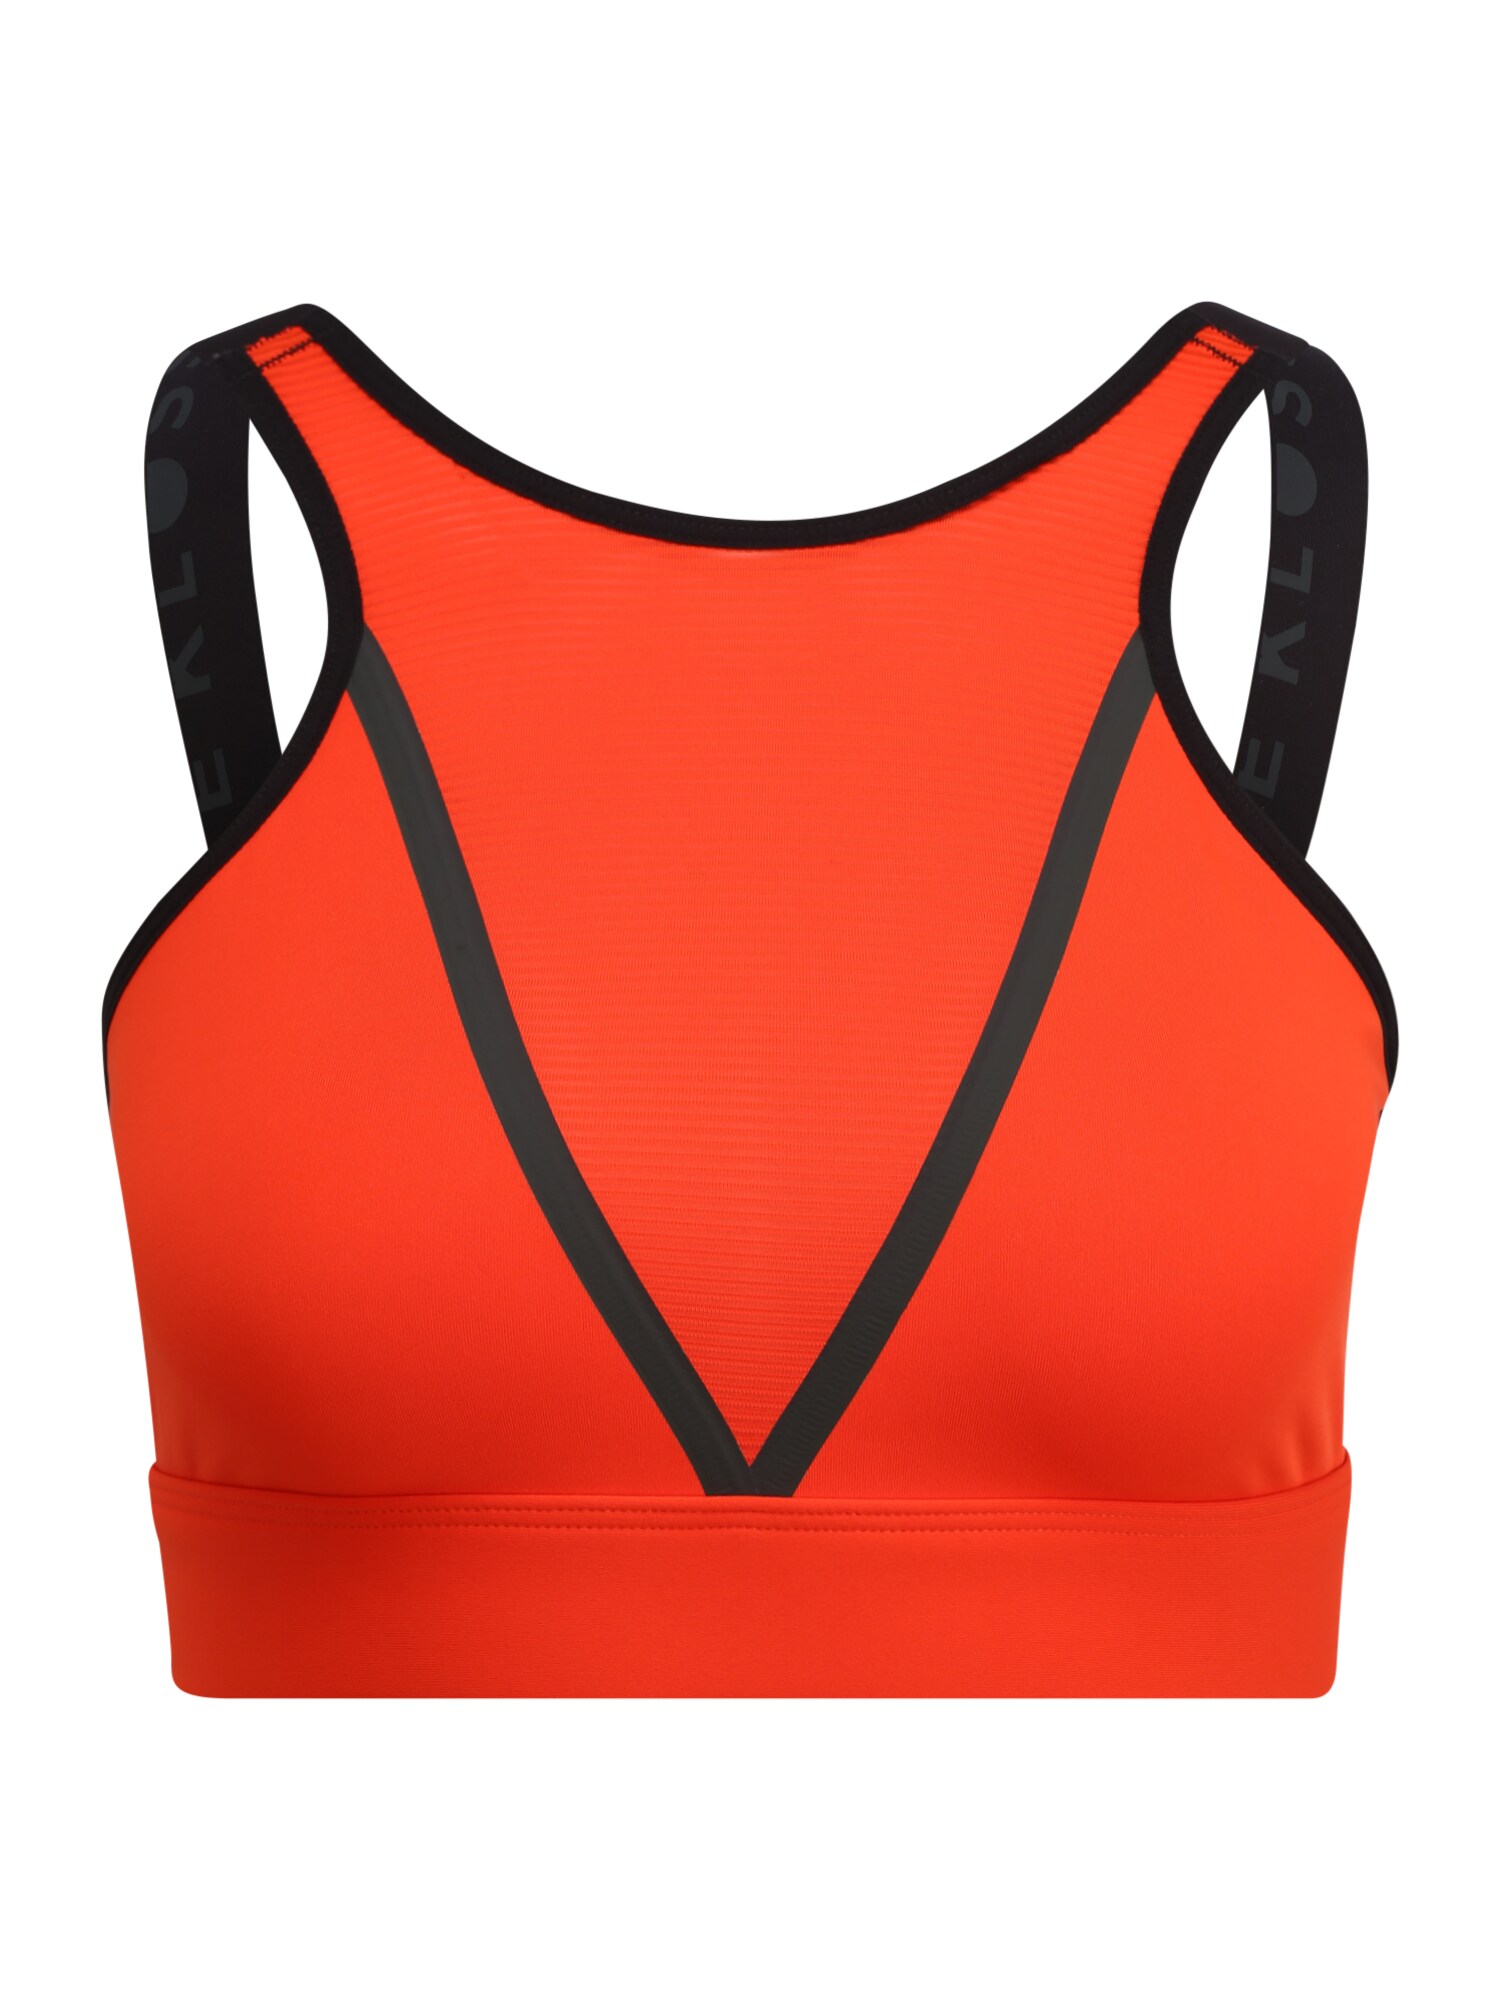 ADIDAS PERFORMANCE Sportinė liemenėlė 'Karlie Kloss'  tamsiai oranžinė / juoda / neoninė oranžinė